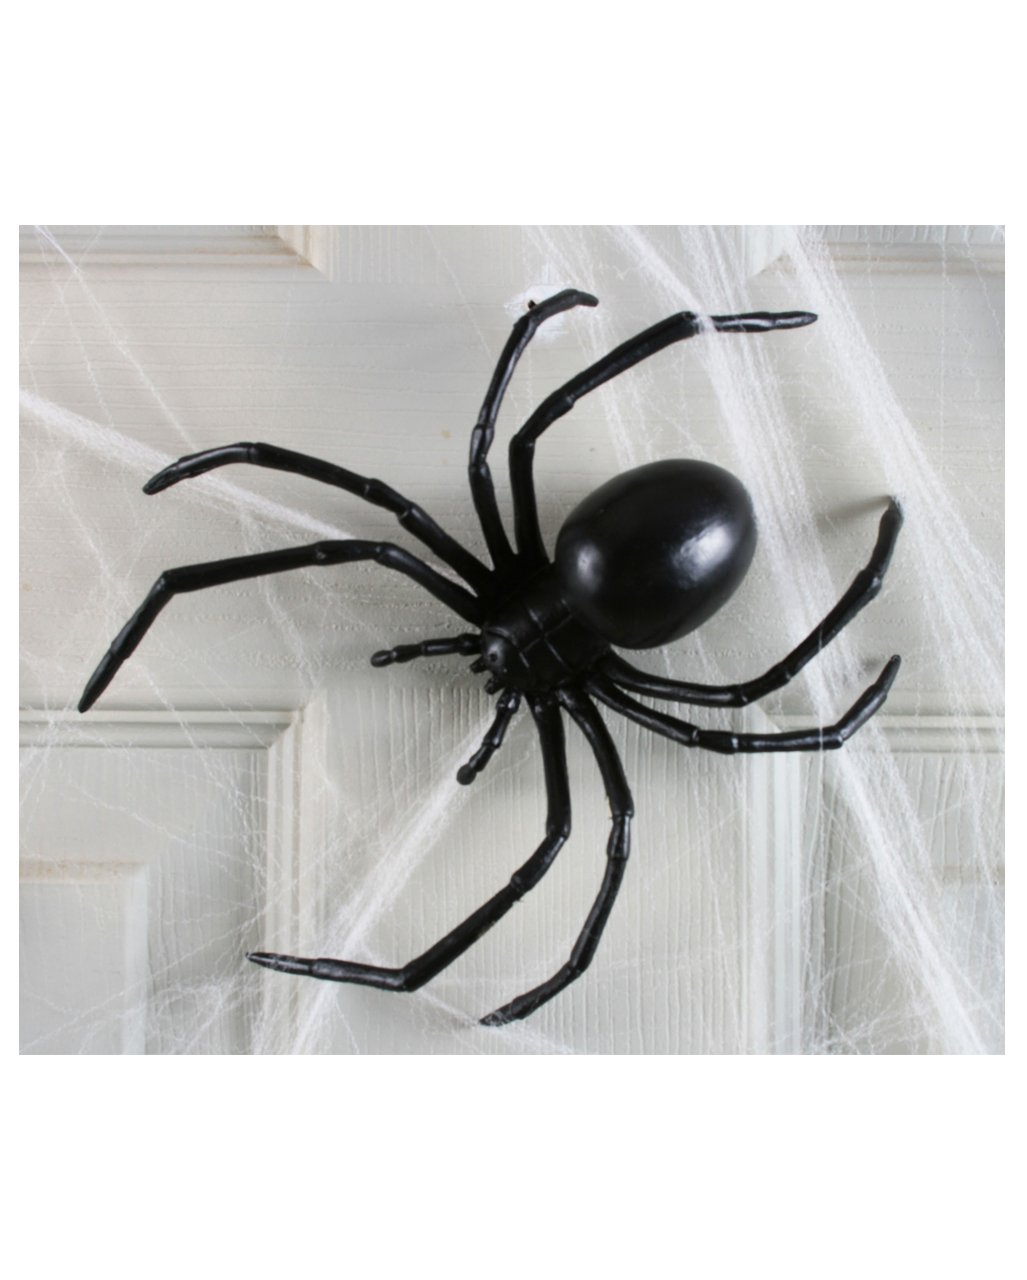 Большой черный паук в квартире